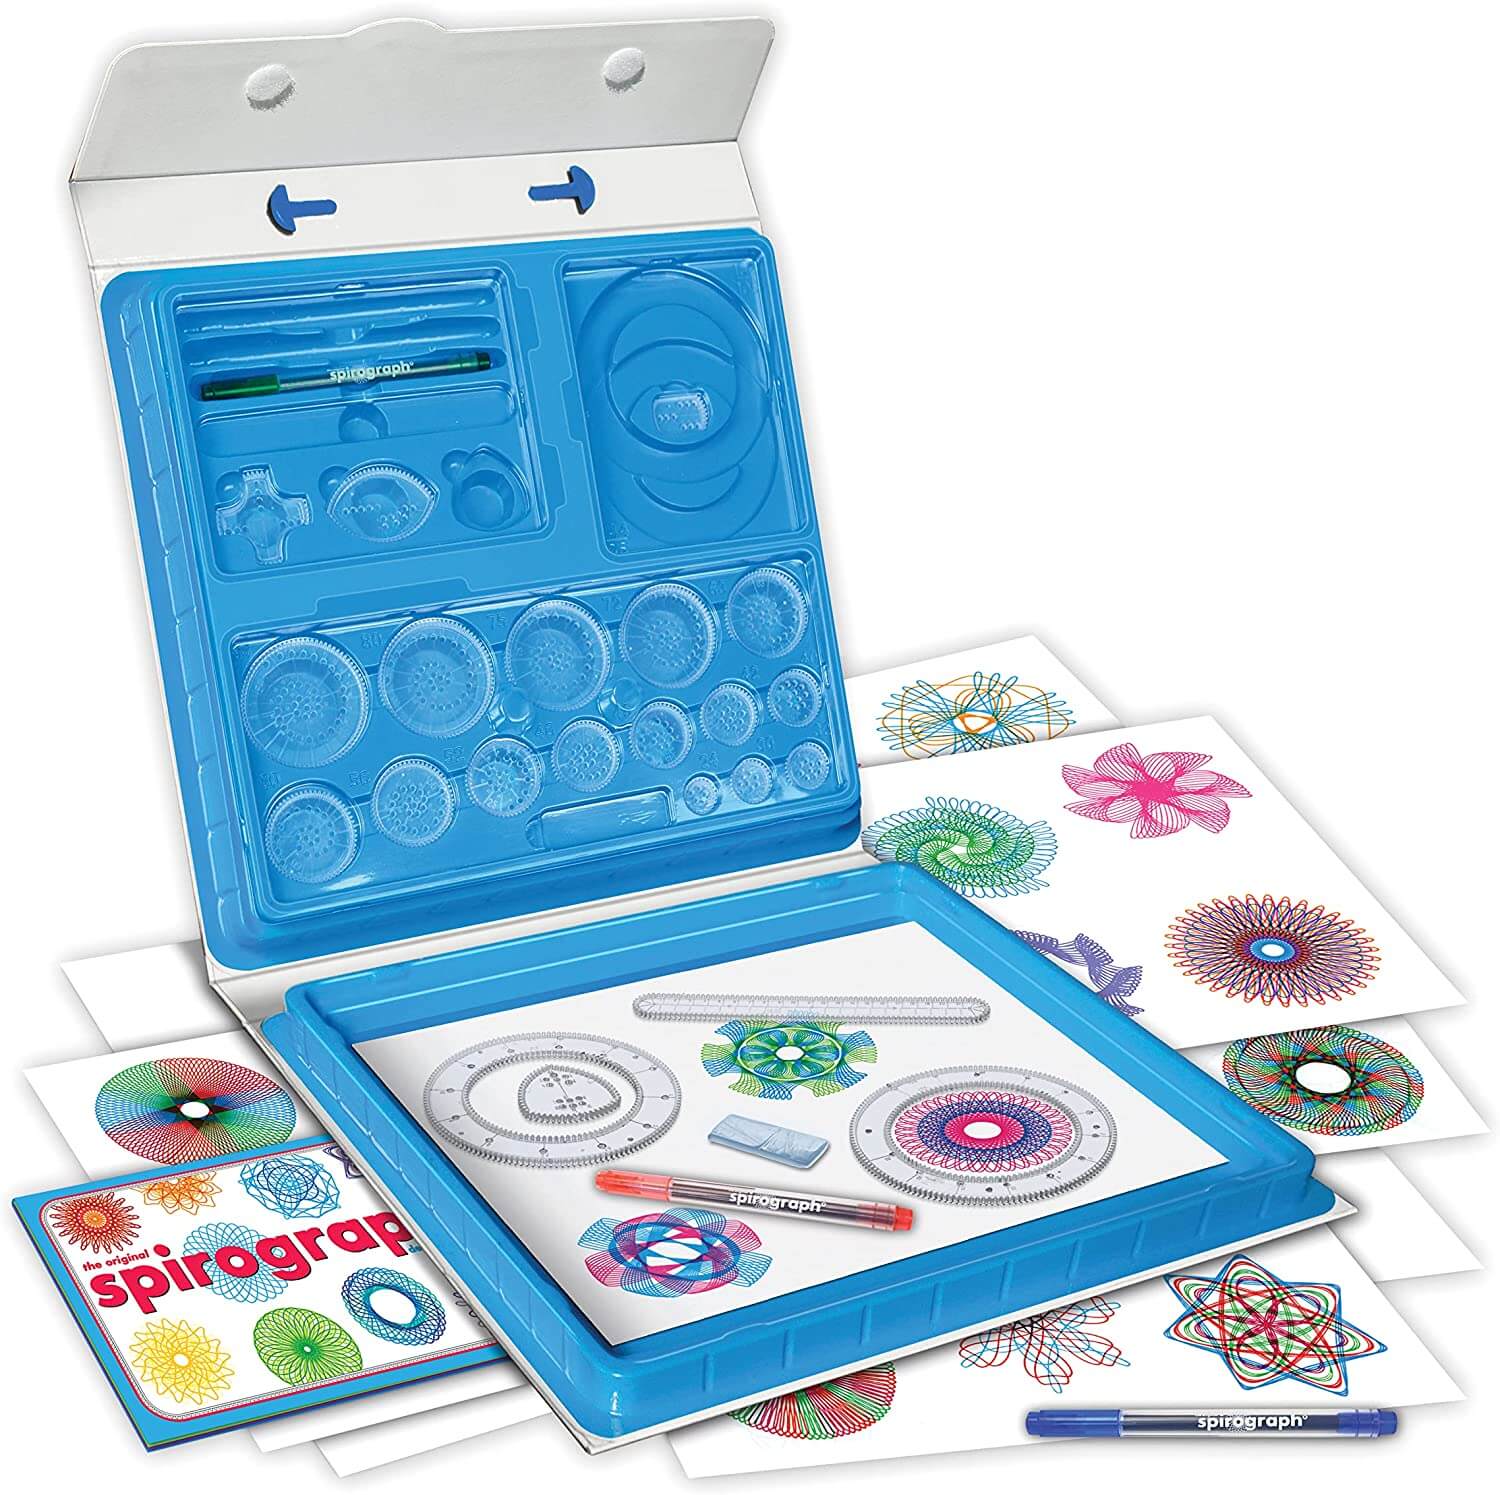 Creative kit for kids - spirograph deluxe set - buy spirograph craft kit for children